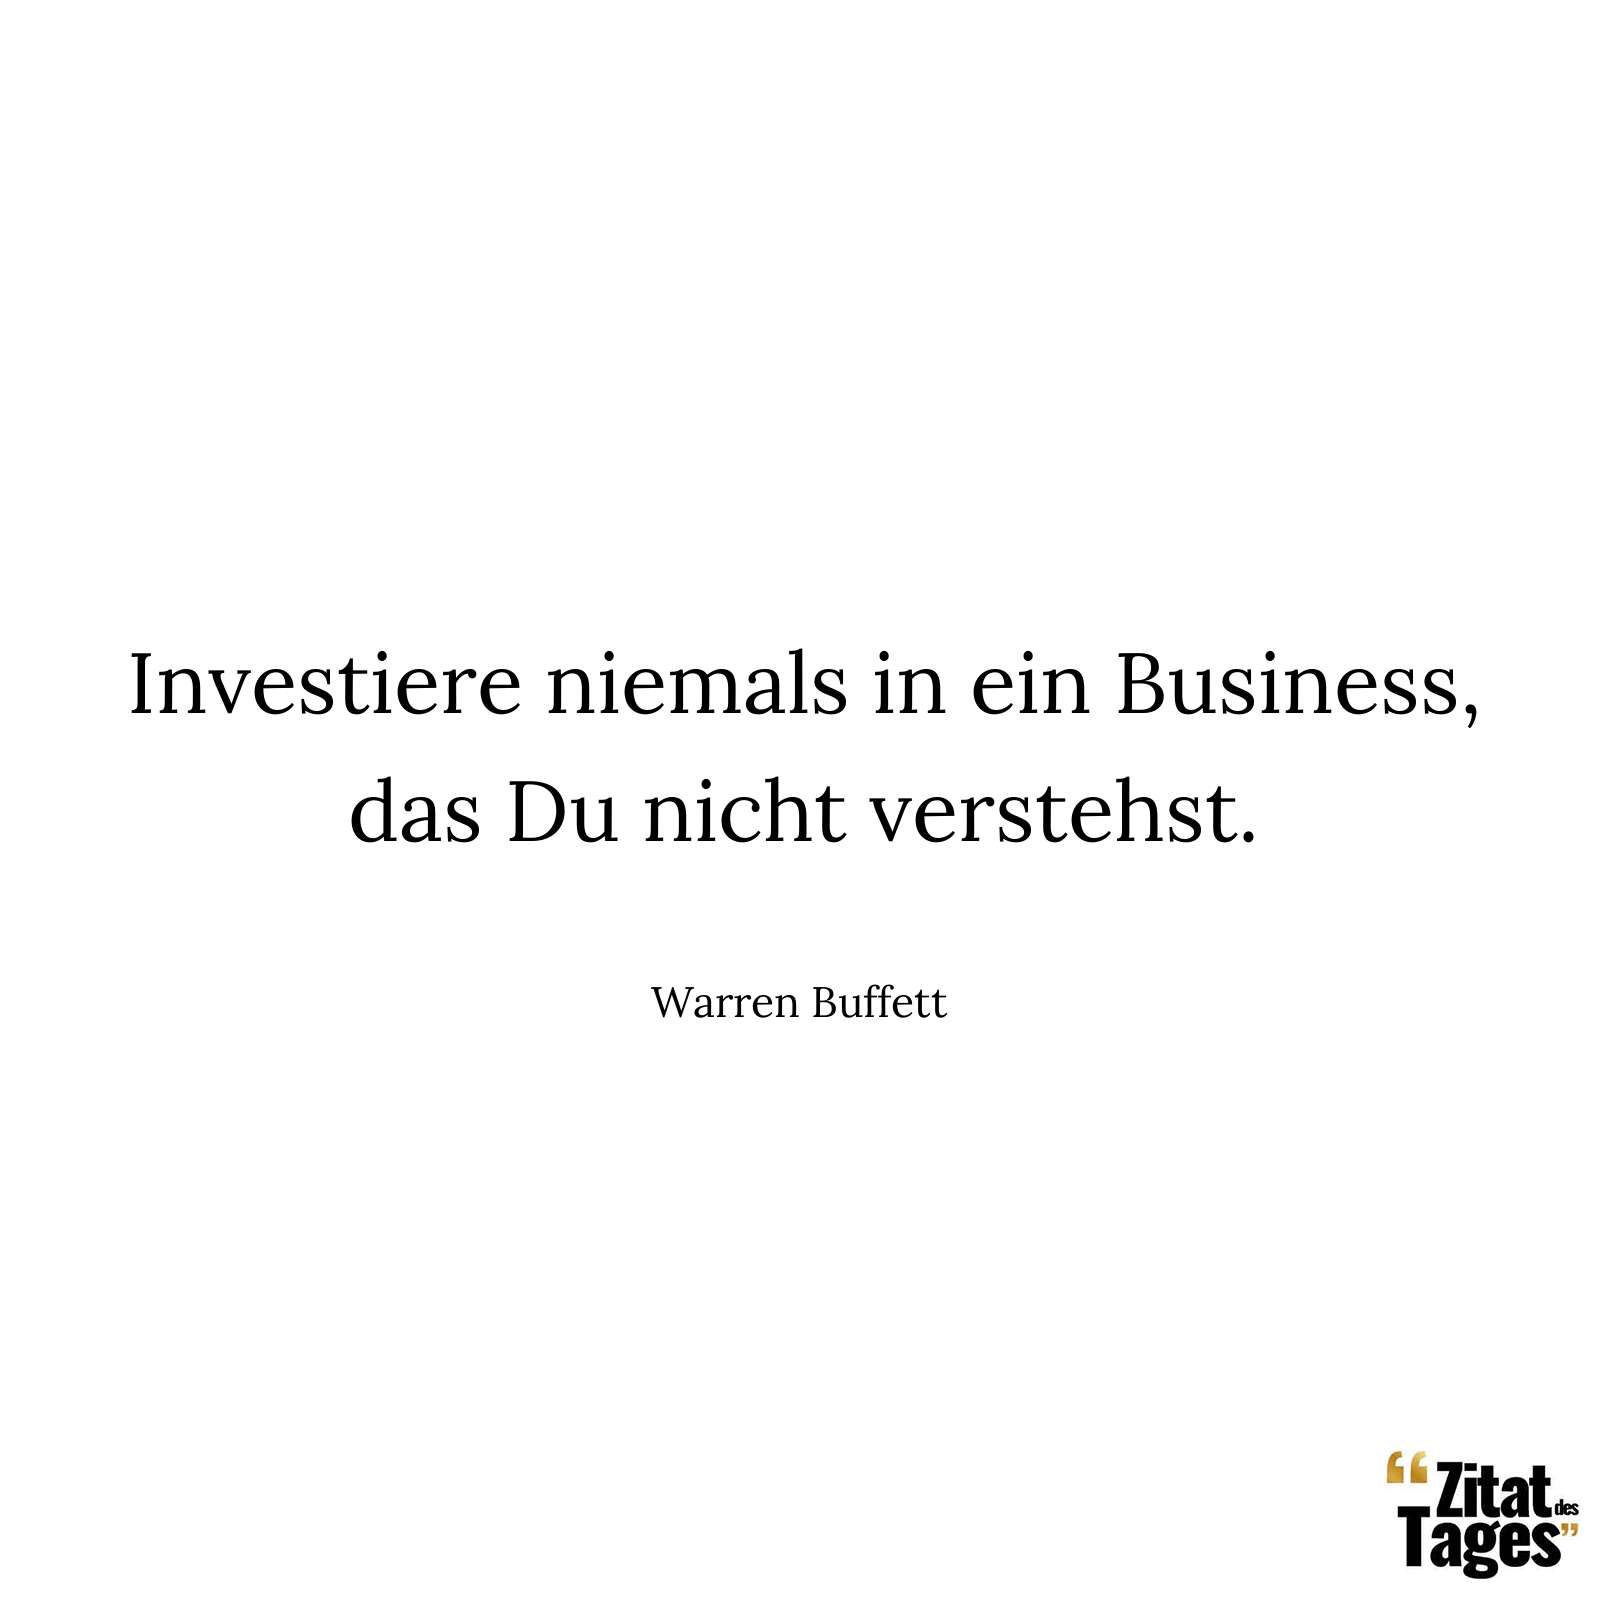 Investiere niemals in ein Business, das Du nicht verstehst. - Warren Buffett